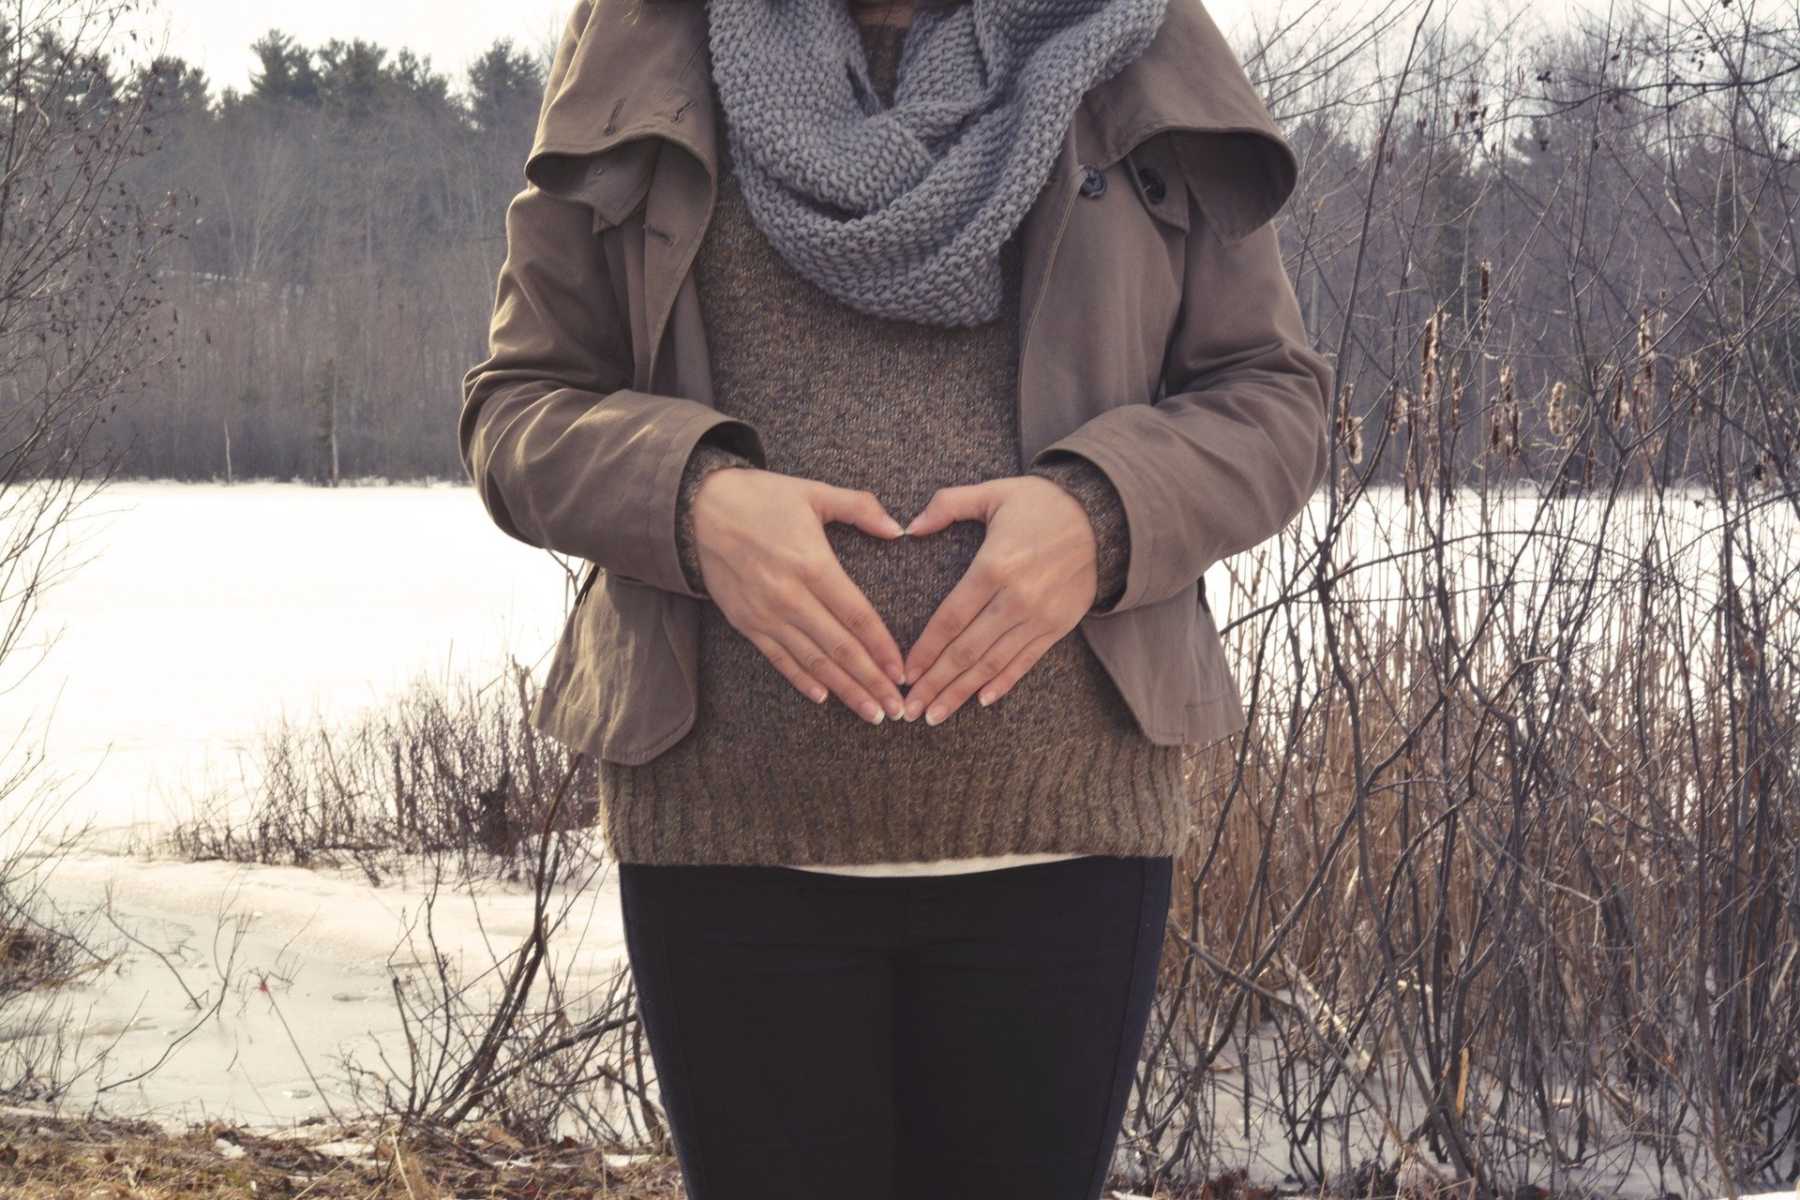 Winter v summer pregnancies: 8 tips for managing the colder months